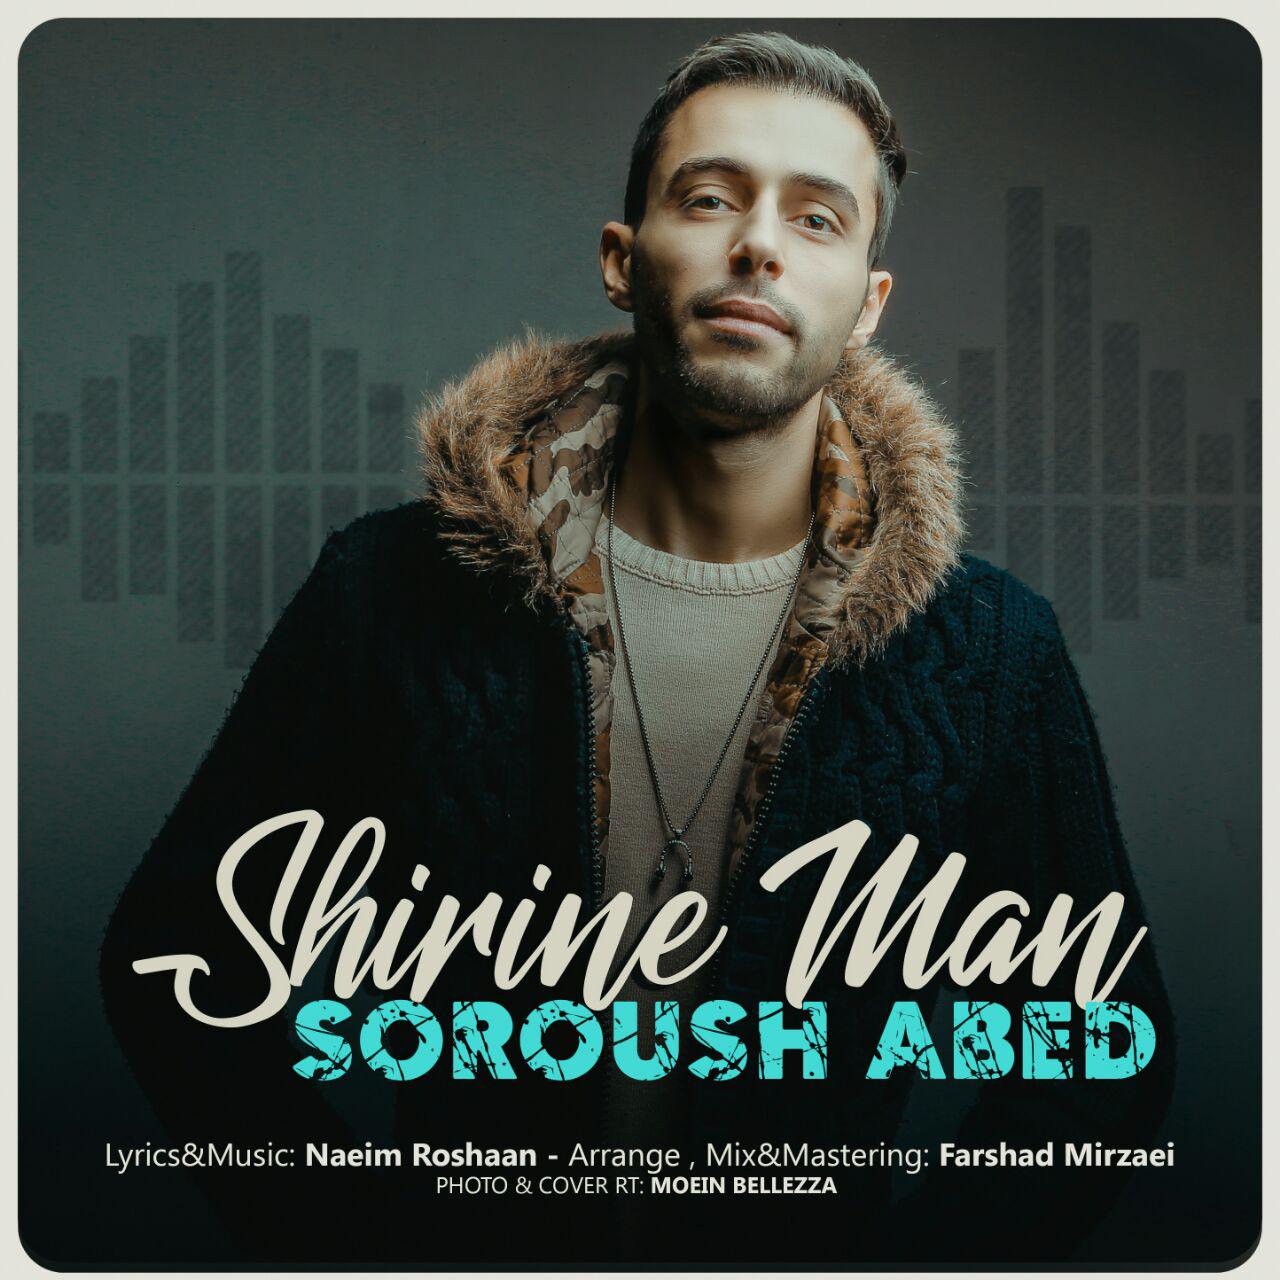  دانلود آهنگ جدید سروش عابد - شیرین من | Download New Music By Soroush Abed - Shirine Man